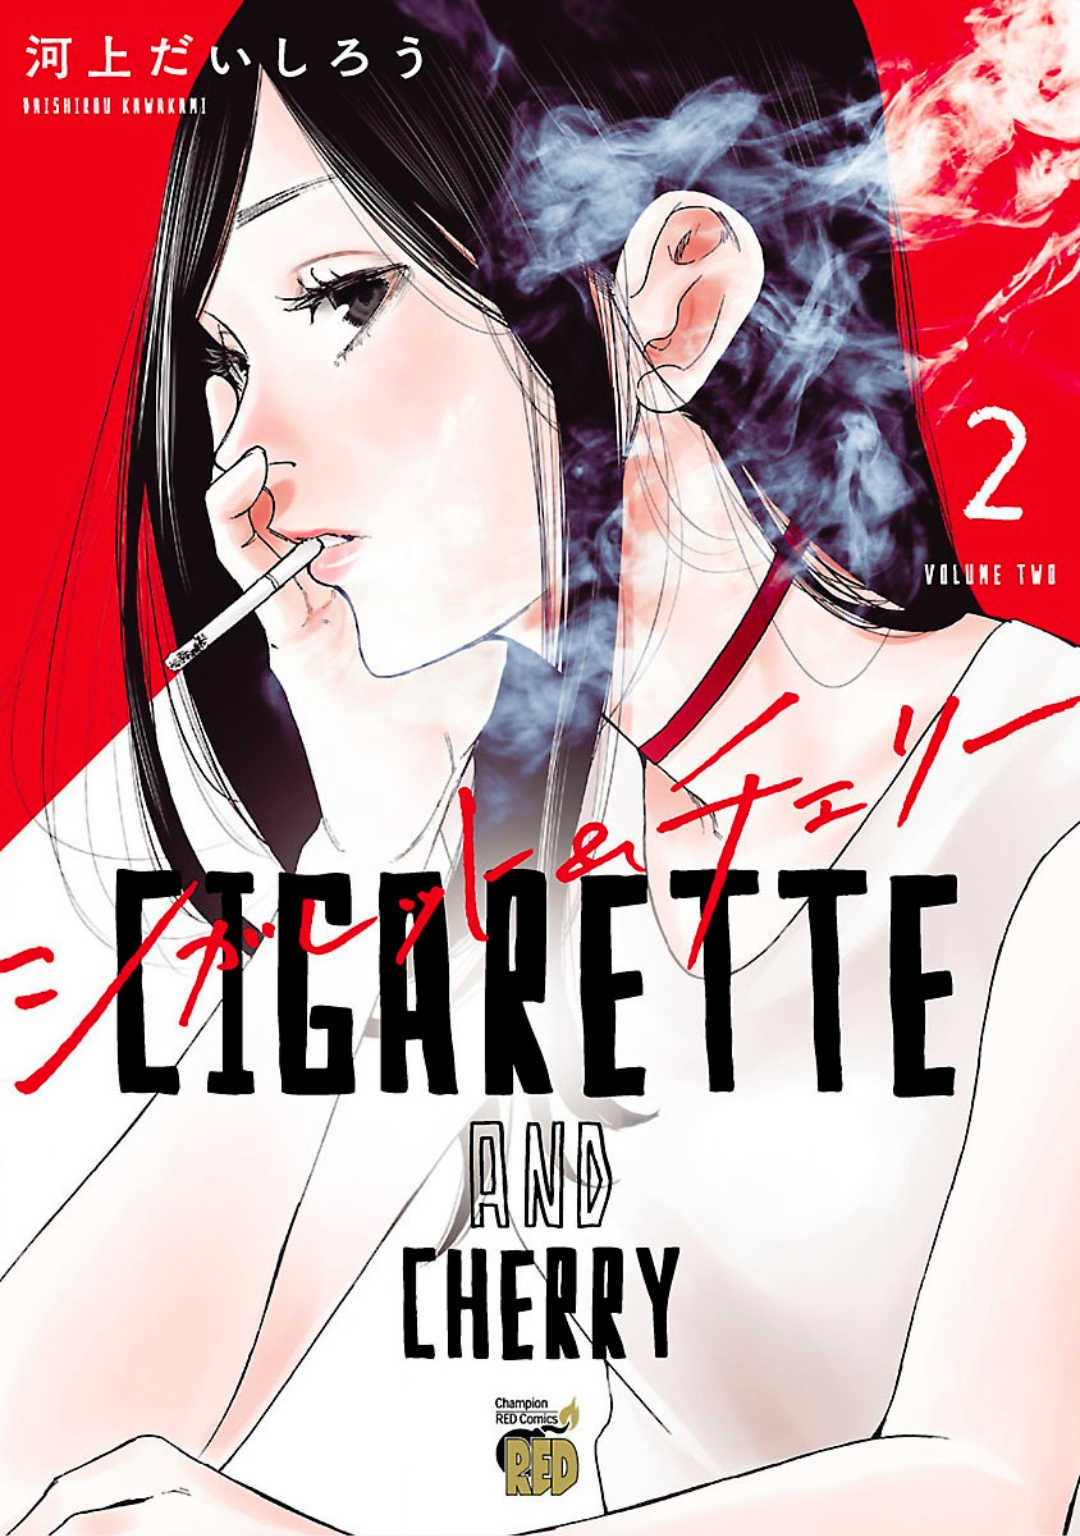 Cigarette & Cherry 13 (1)